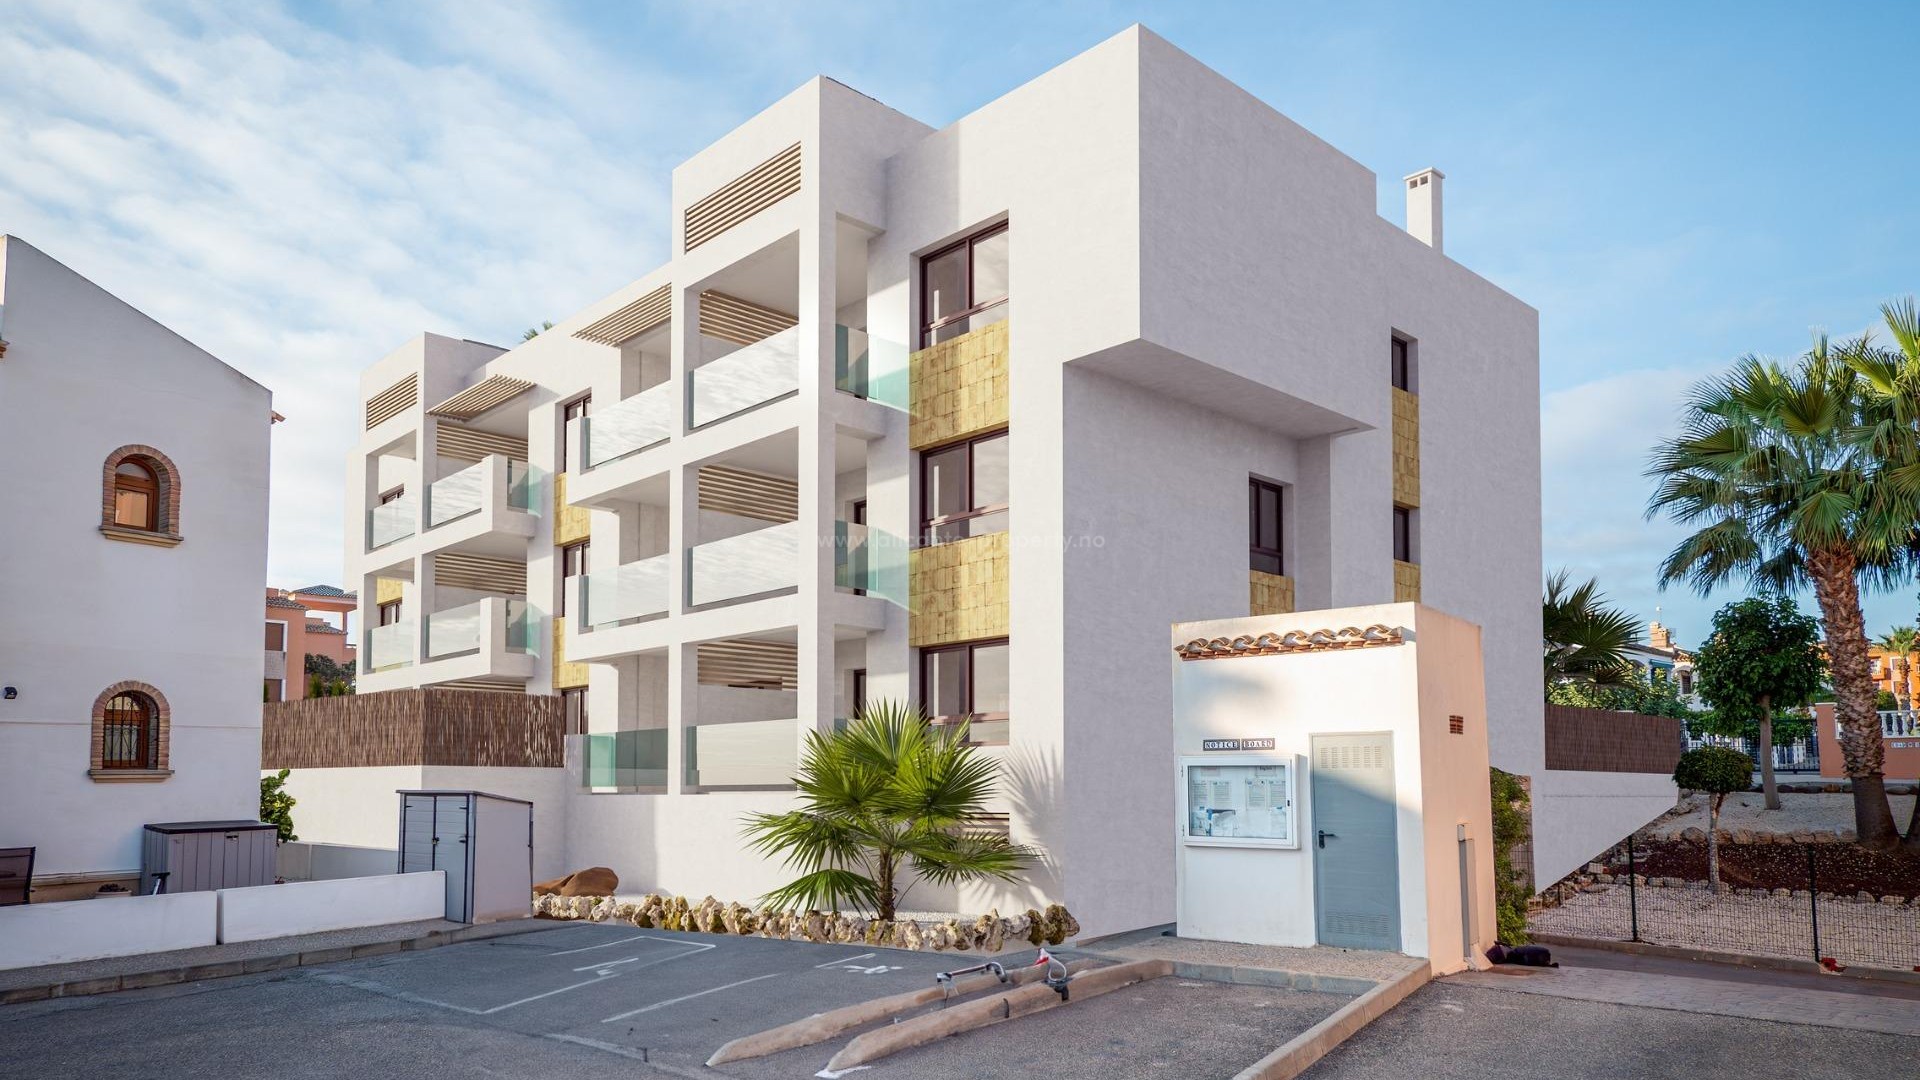 Kjøpe leilighet i boligkompleks i Orihuela Costa? Forskjellige typer leiligheter med svært fine fellesarealer, blant annet et flott svømmebasseng